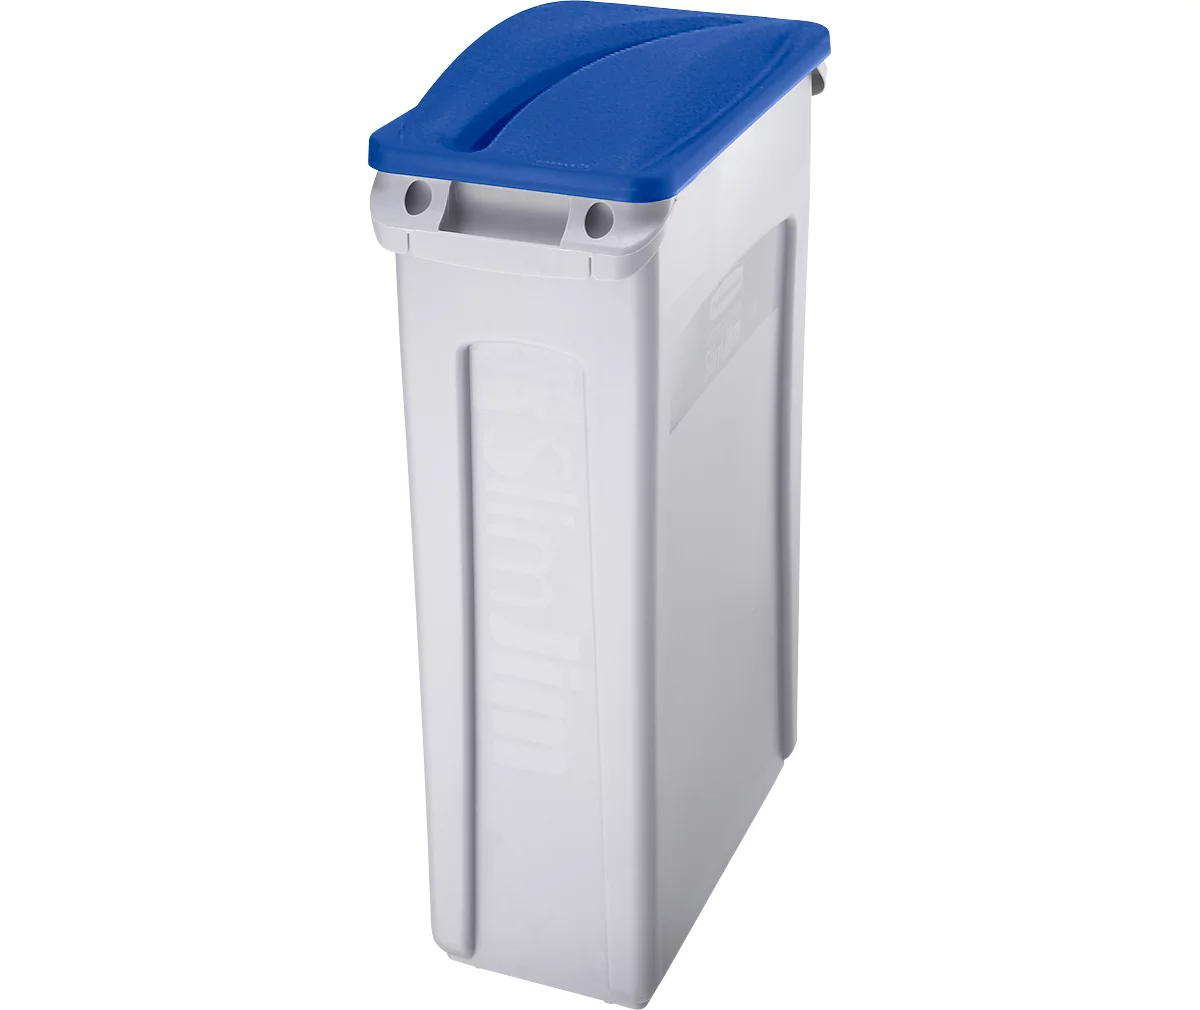 Tapa para entrada de papel, para cubo de basura Slim Jim®, azul